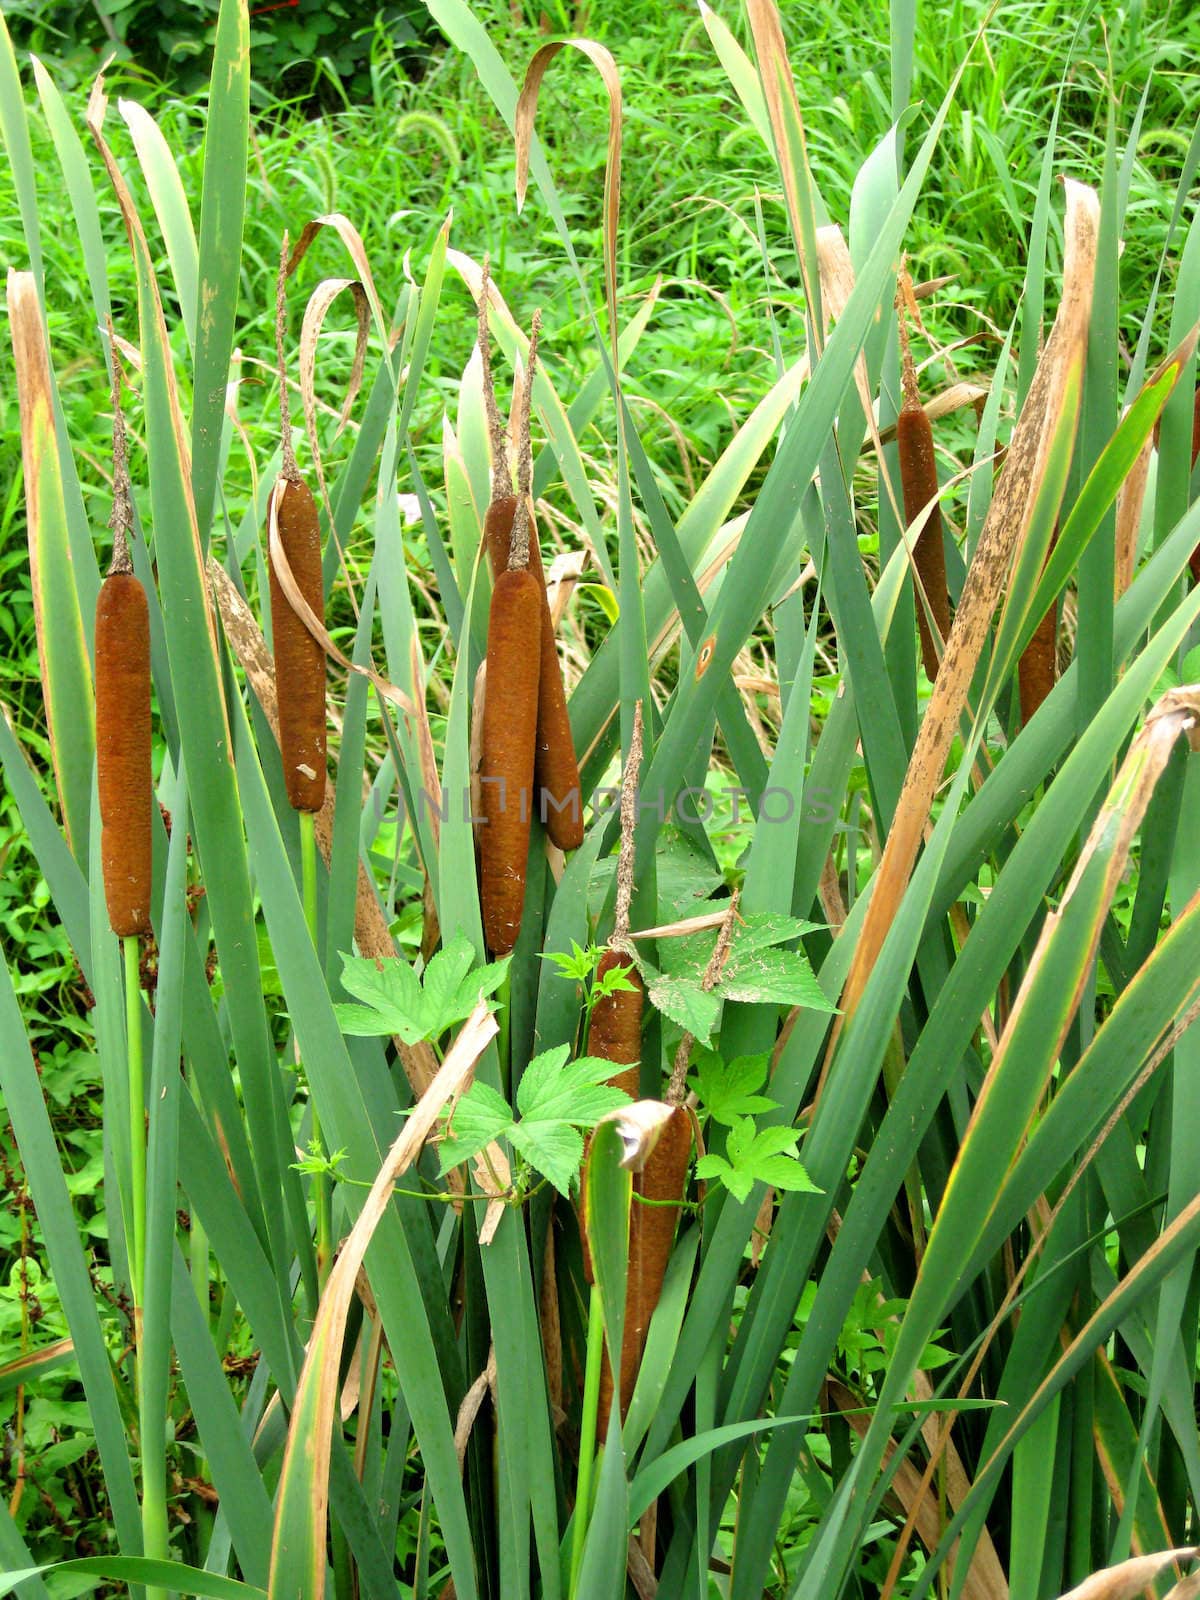 a botany of reeds